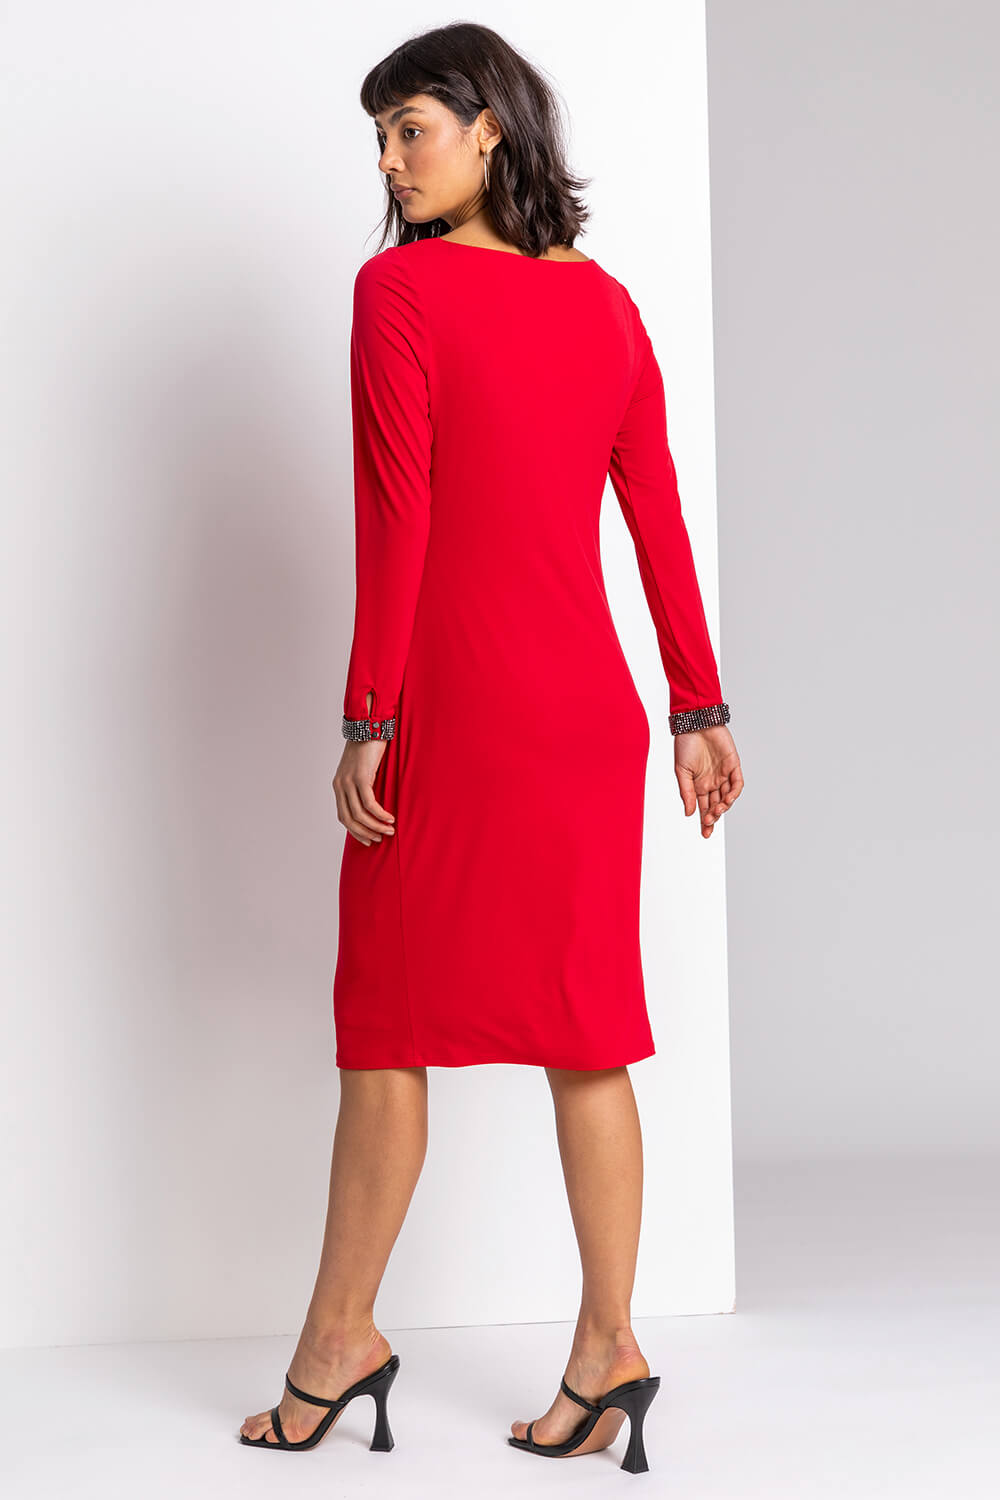 Red Sparkle Embellished Ruched Dress, Image 2 of 4